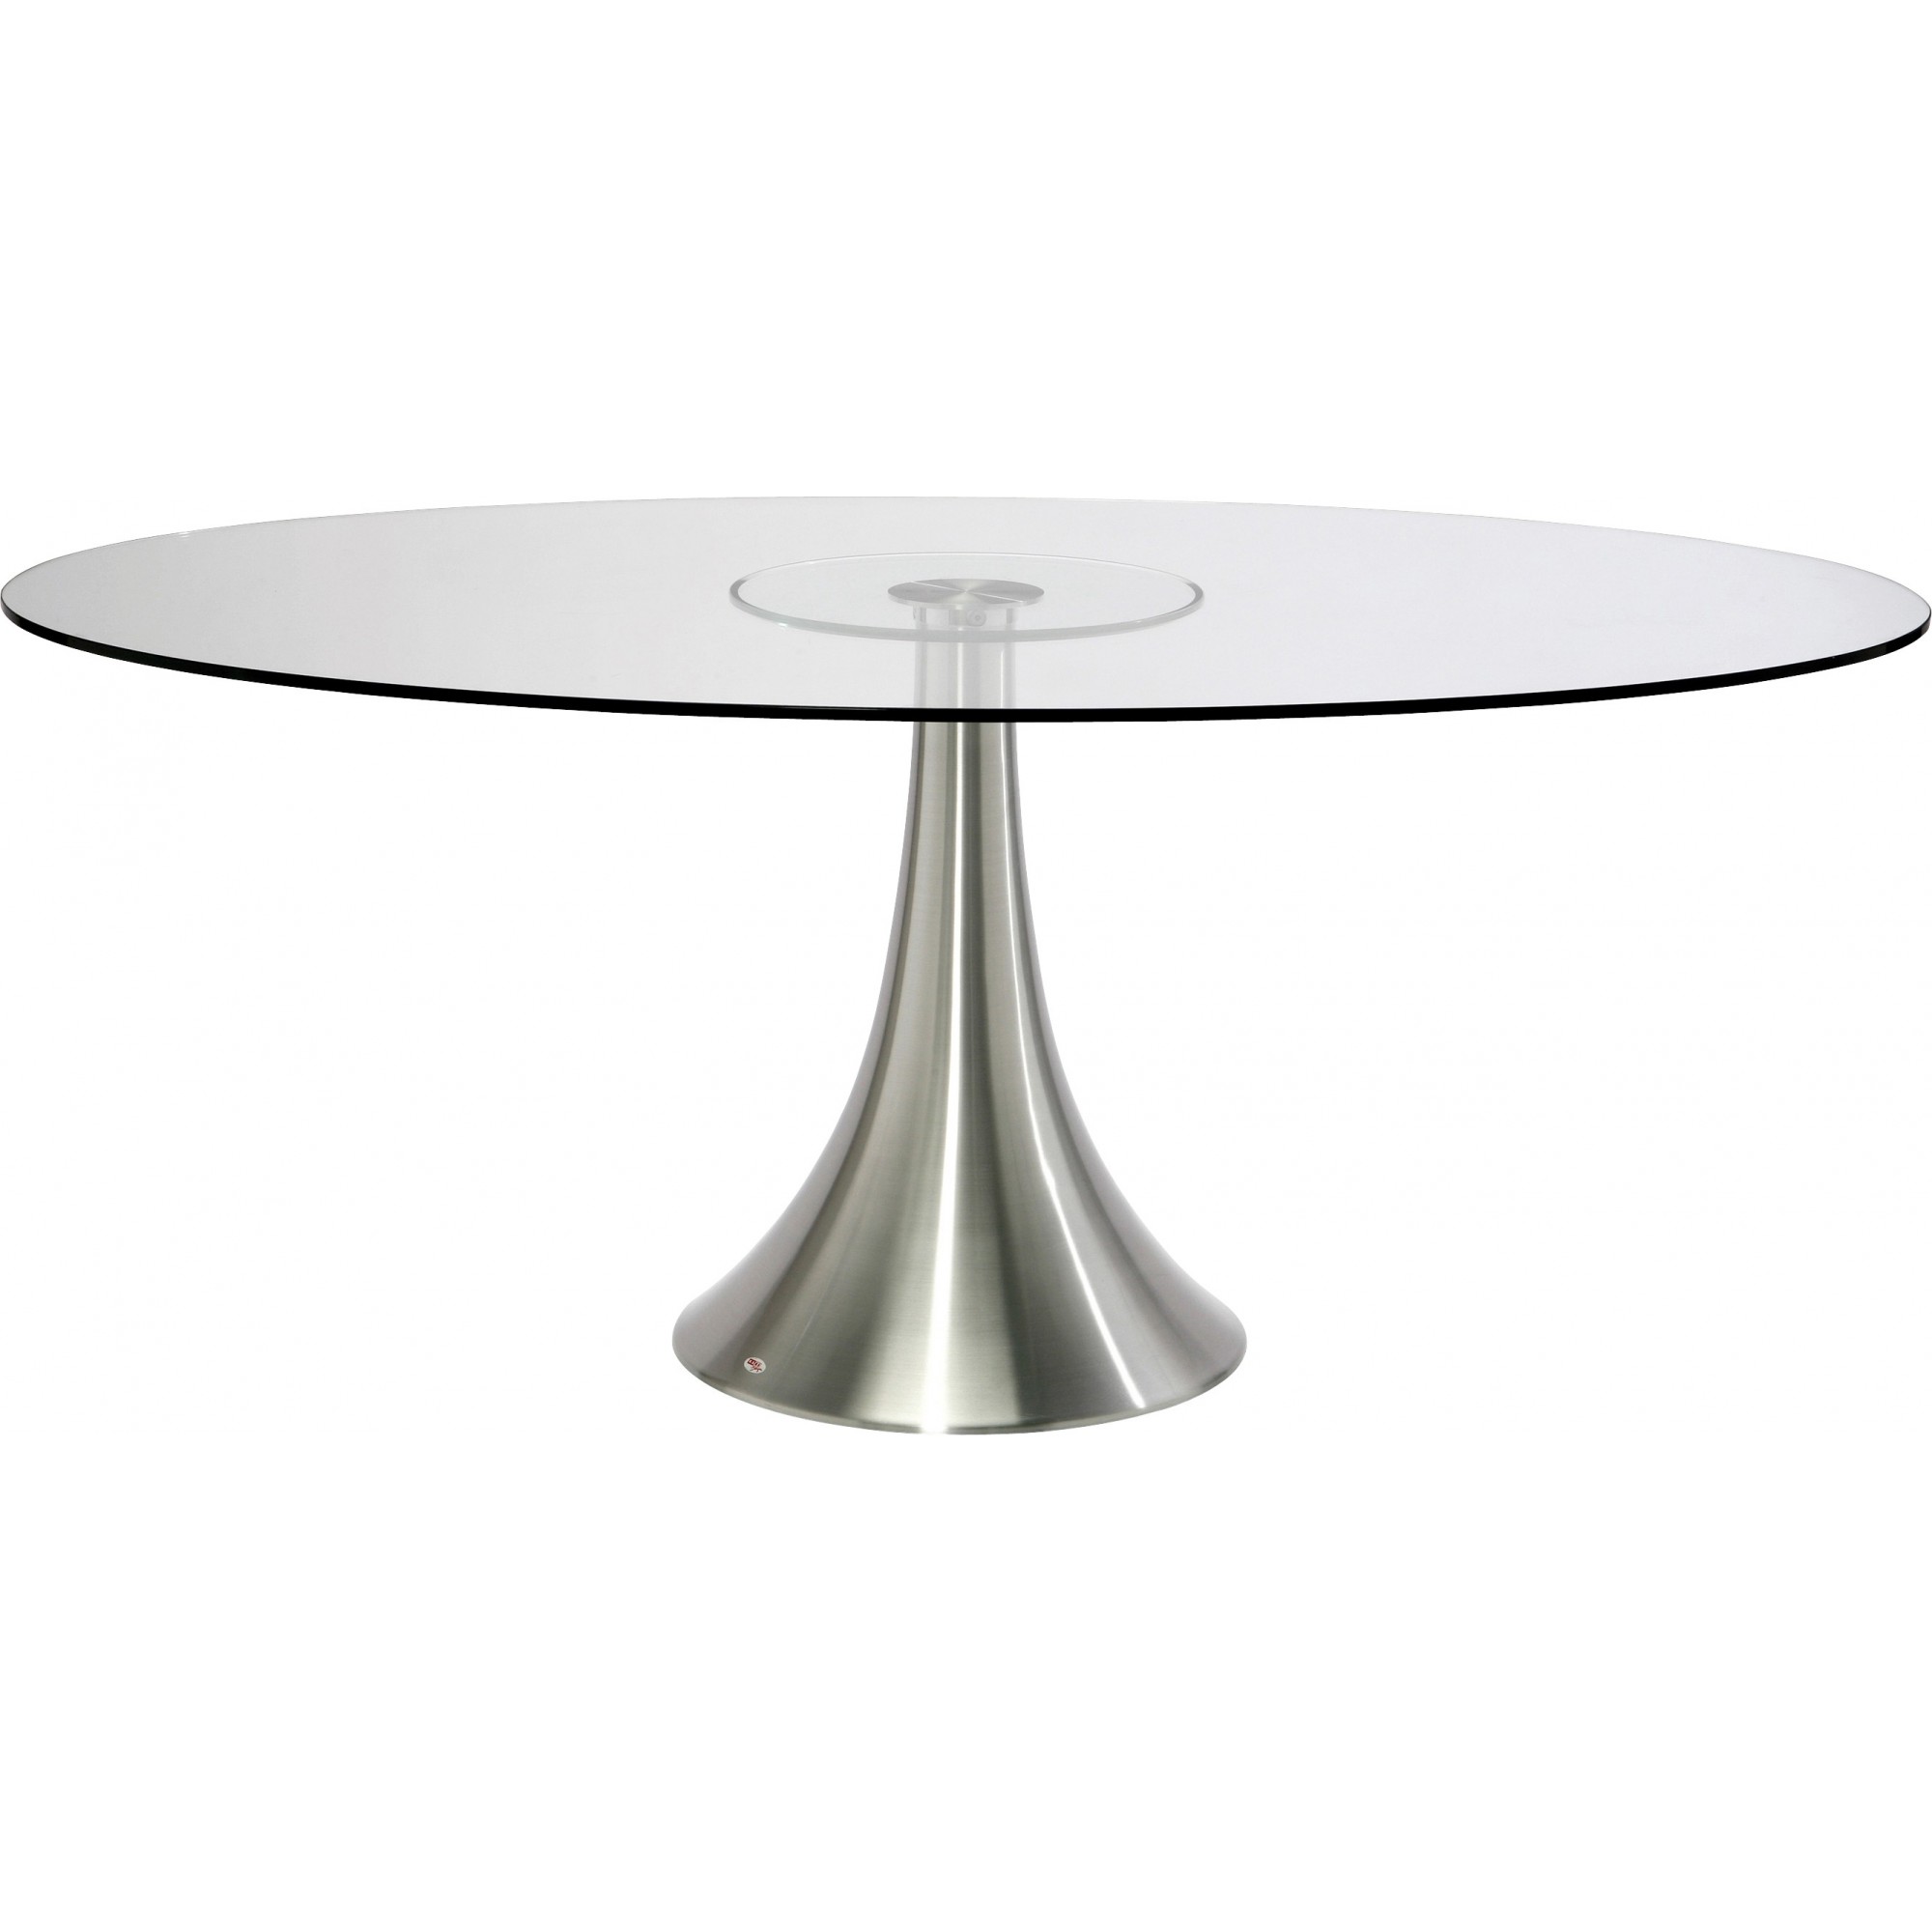 Table Grande Possibilita 180x120cm Kare Design